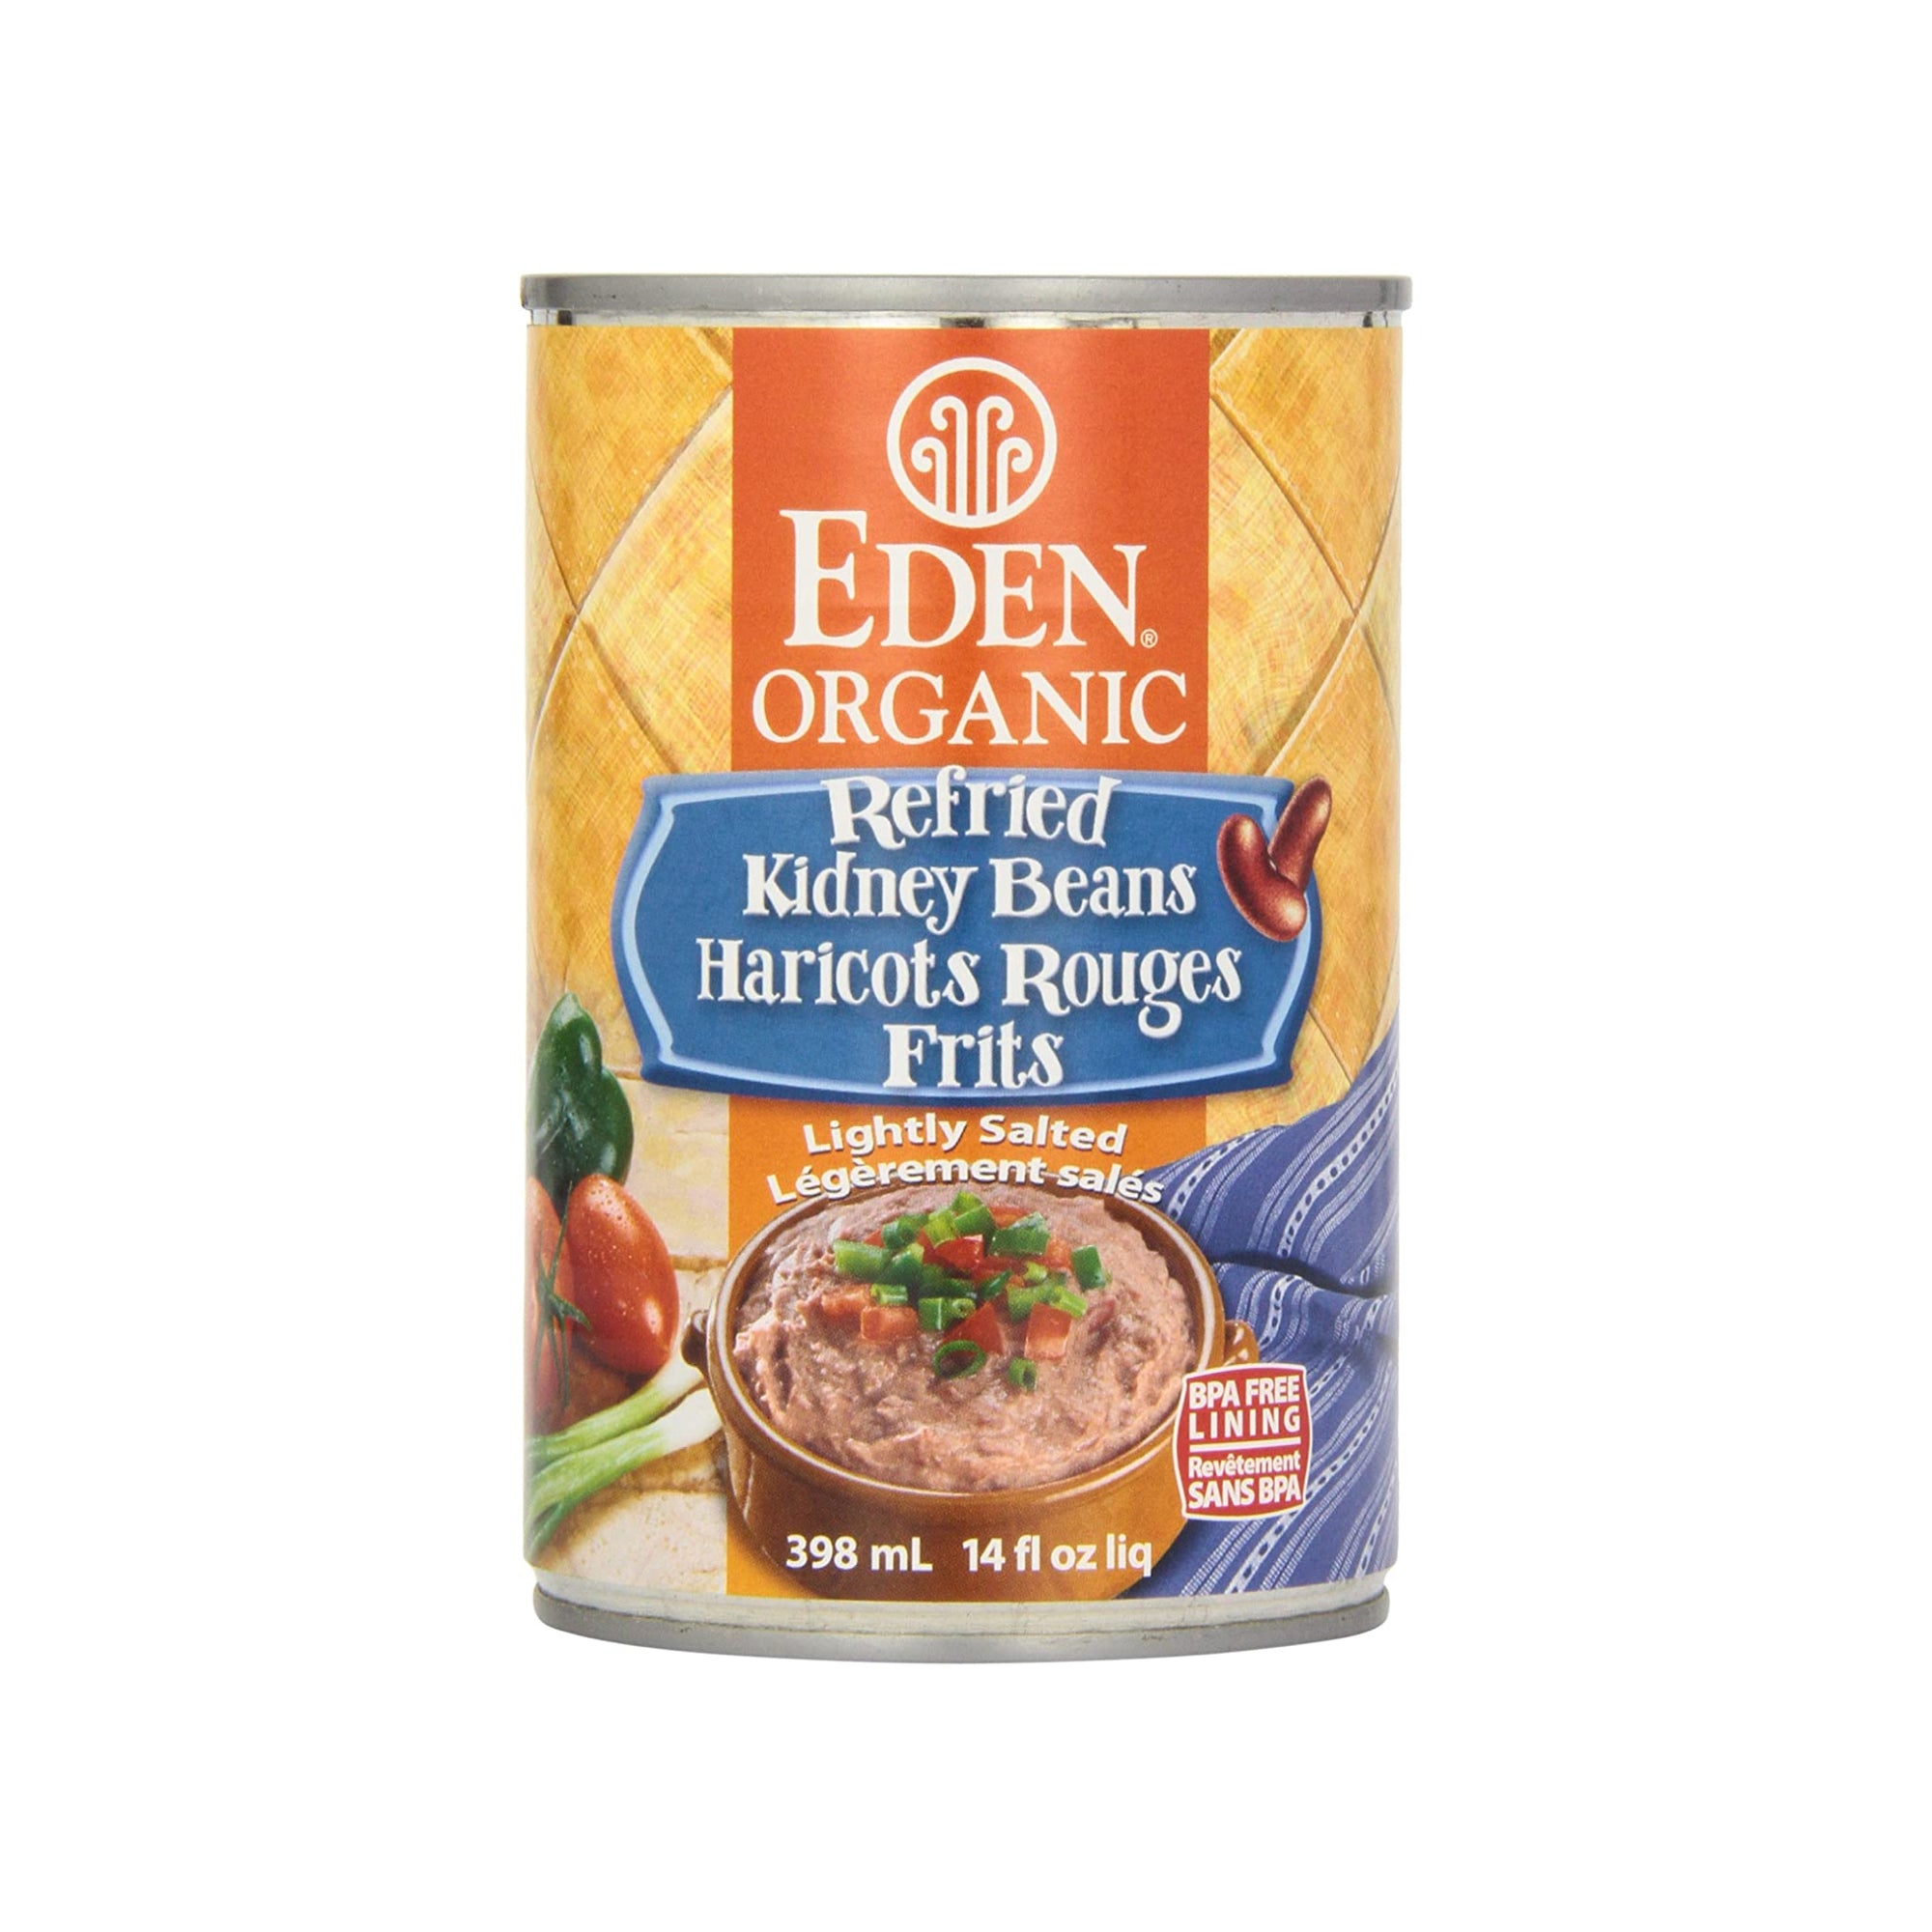 Eden Organic Refried Kidney Beans 398ml